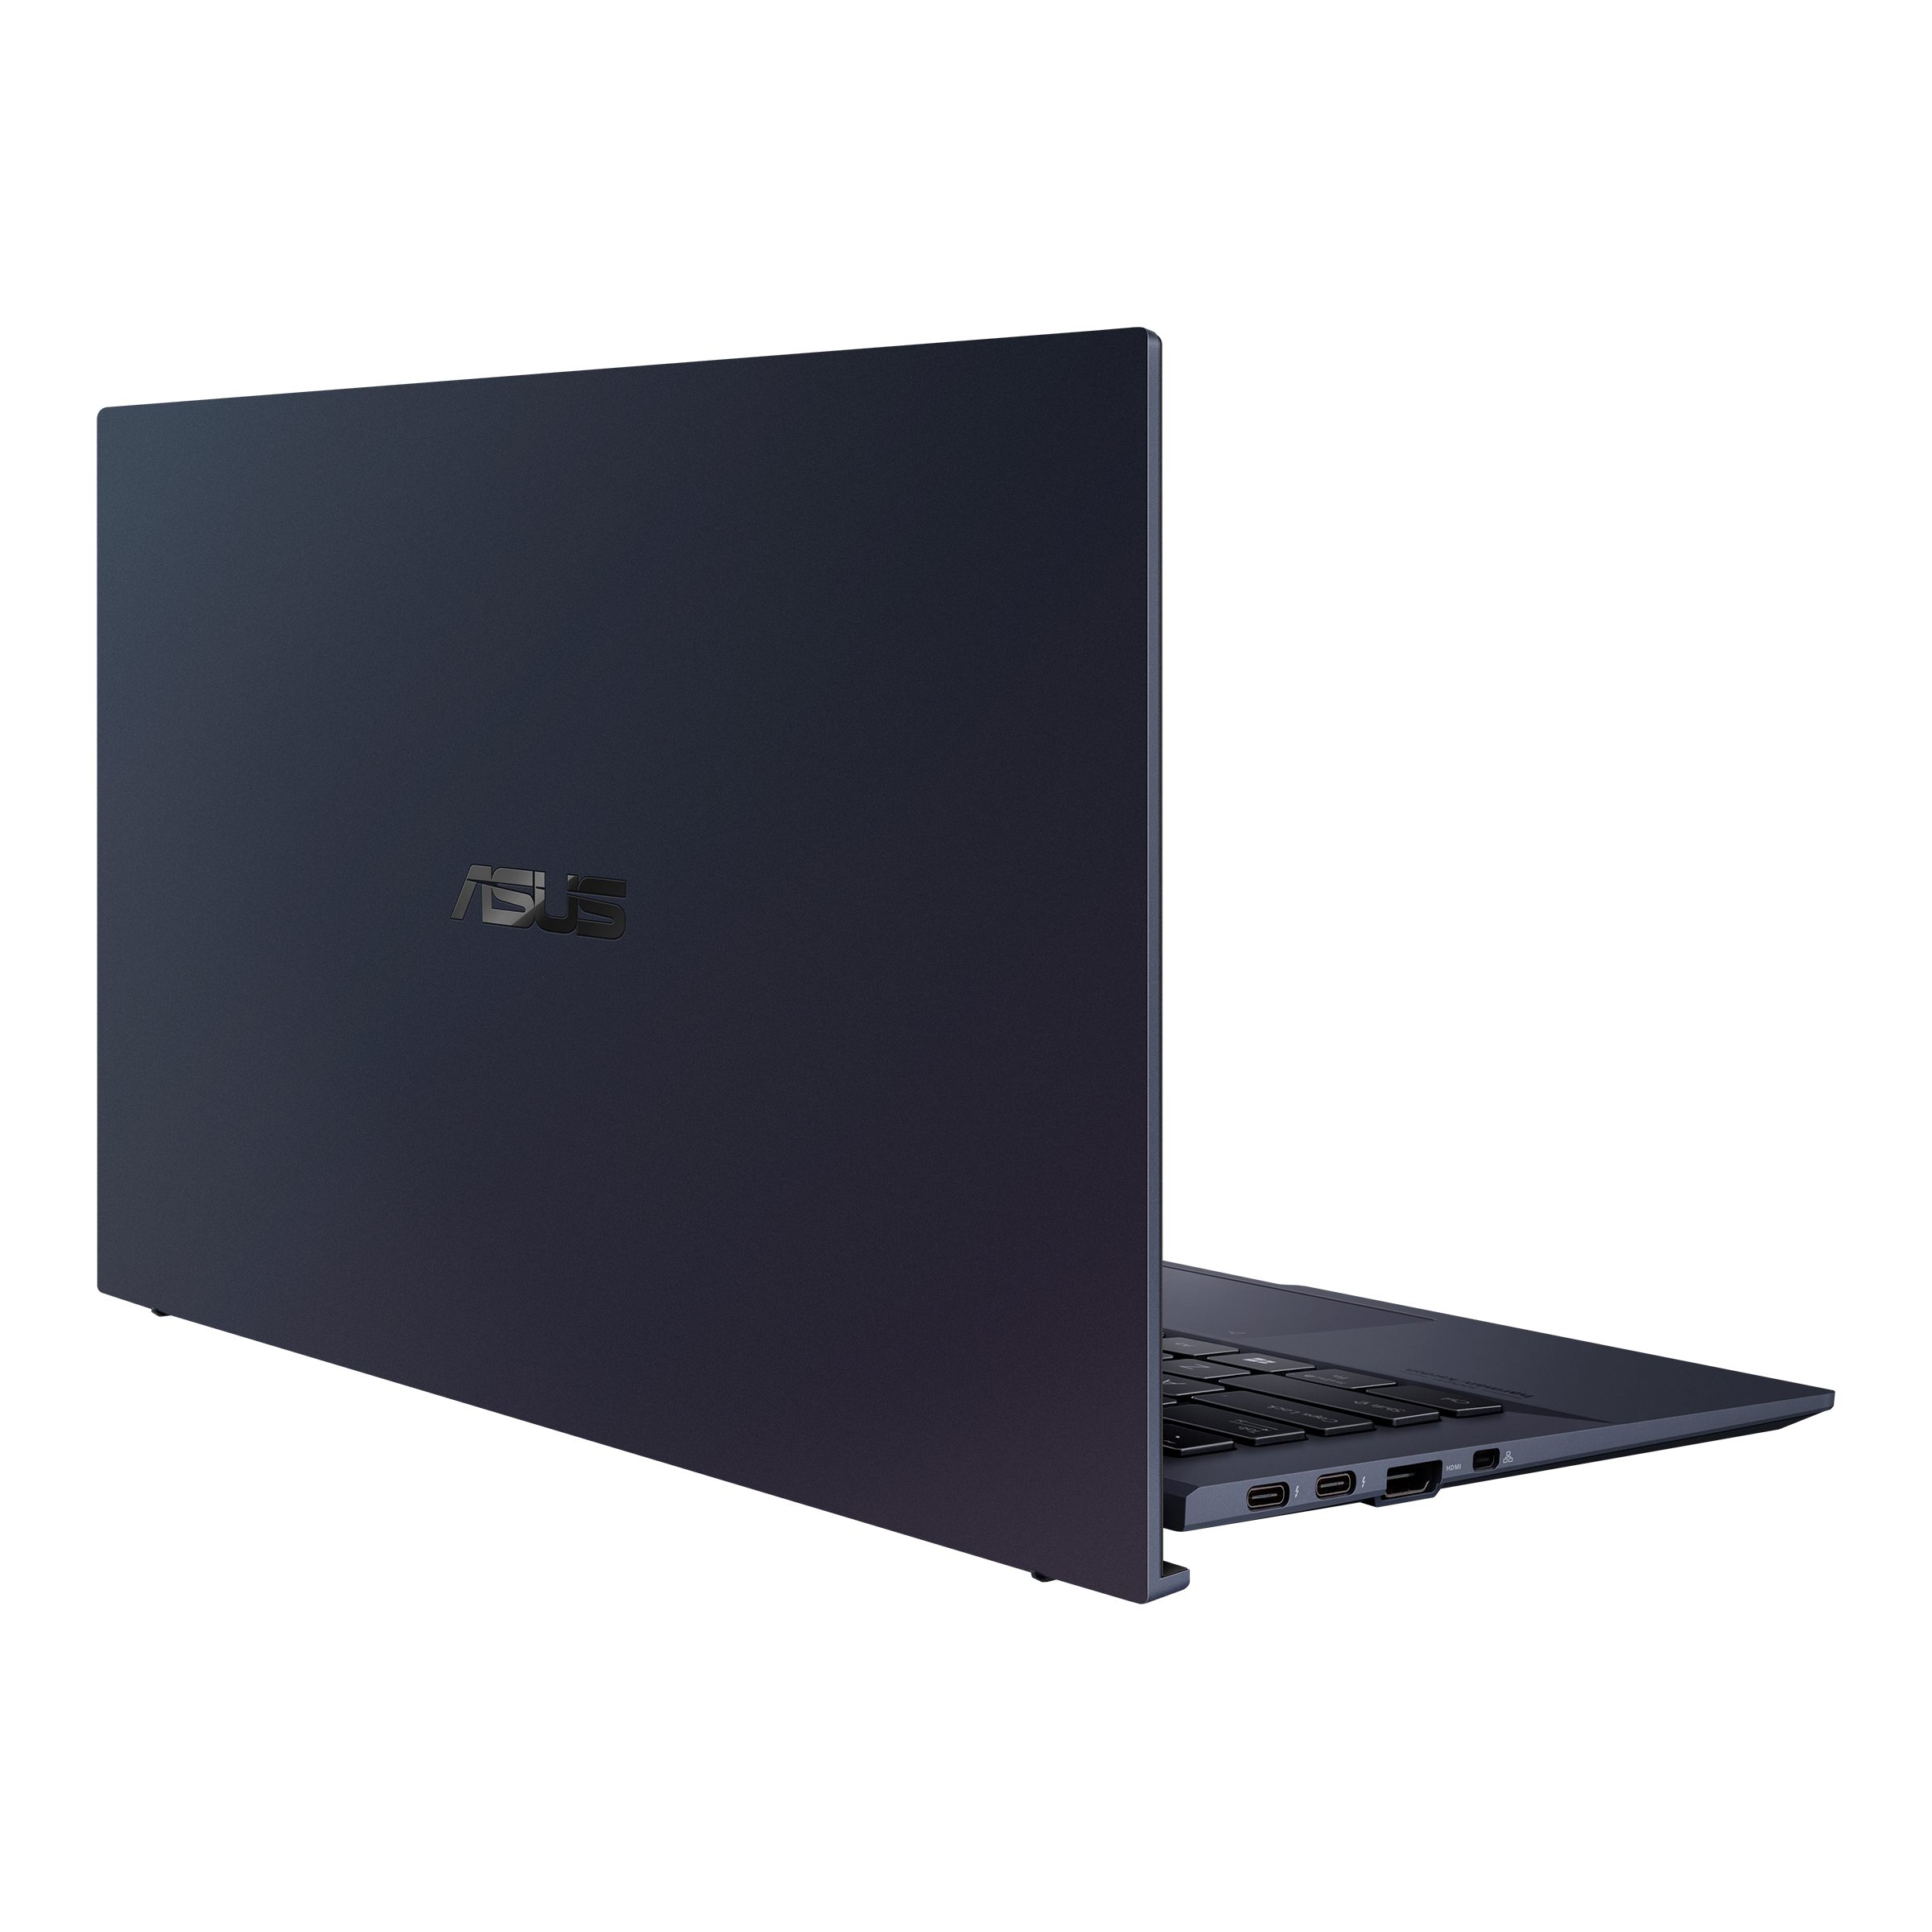 Asus Pro B9, un ordinateur portable ultra fin et ultra léger - Le Monde  Numérique